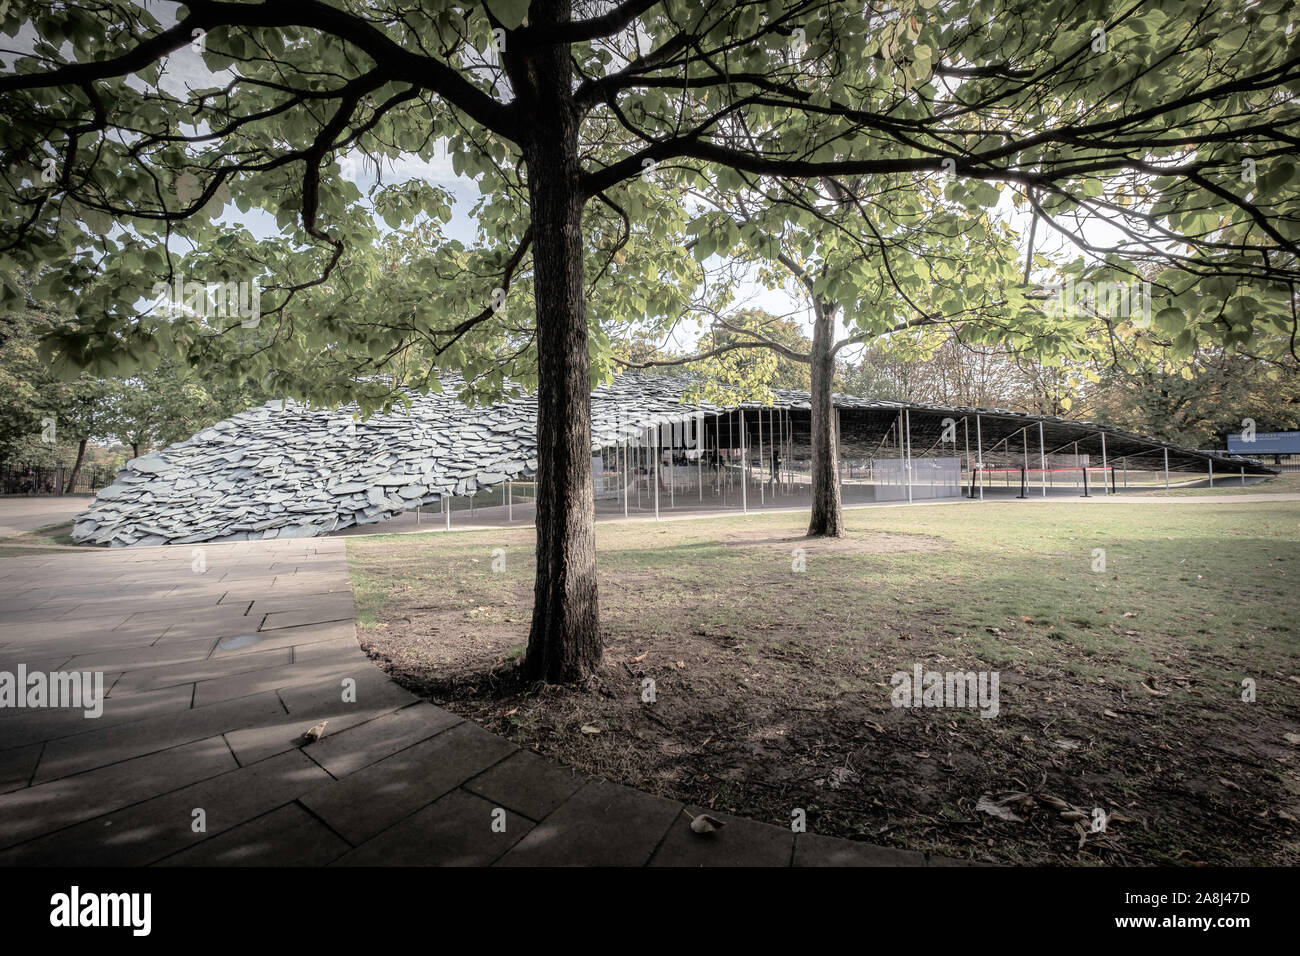 La serpentine Pavilion 2019 conçu par Junja Ishigami, Kensington Gardens, London, UK. Banque D'Images